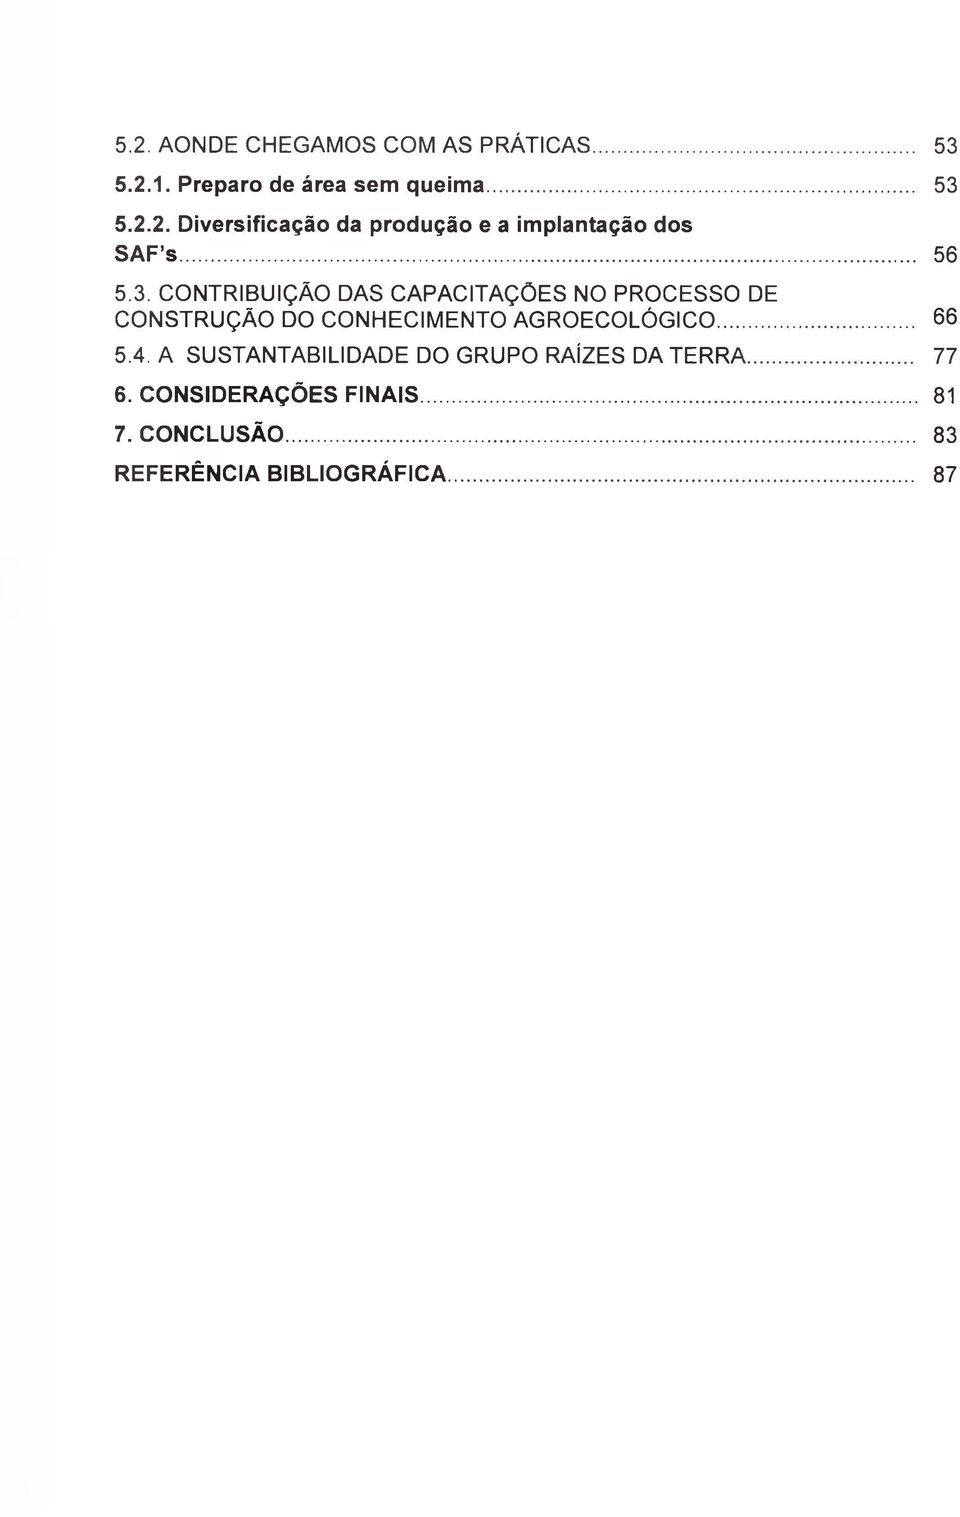 CONTRIBUIÇÃO DAS CAPACITAÇÕES NO PROCESSO DE CONSTRUÇÃO DO CONHECIMENTO AGROECOLÓGICO...66 5.4.